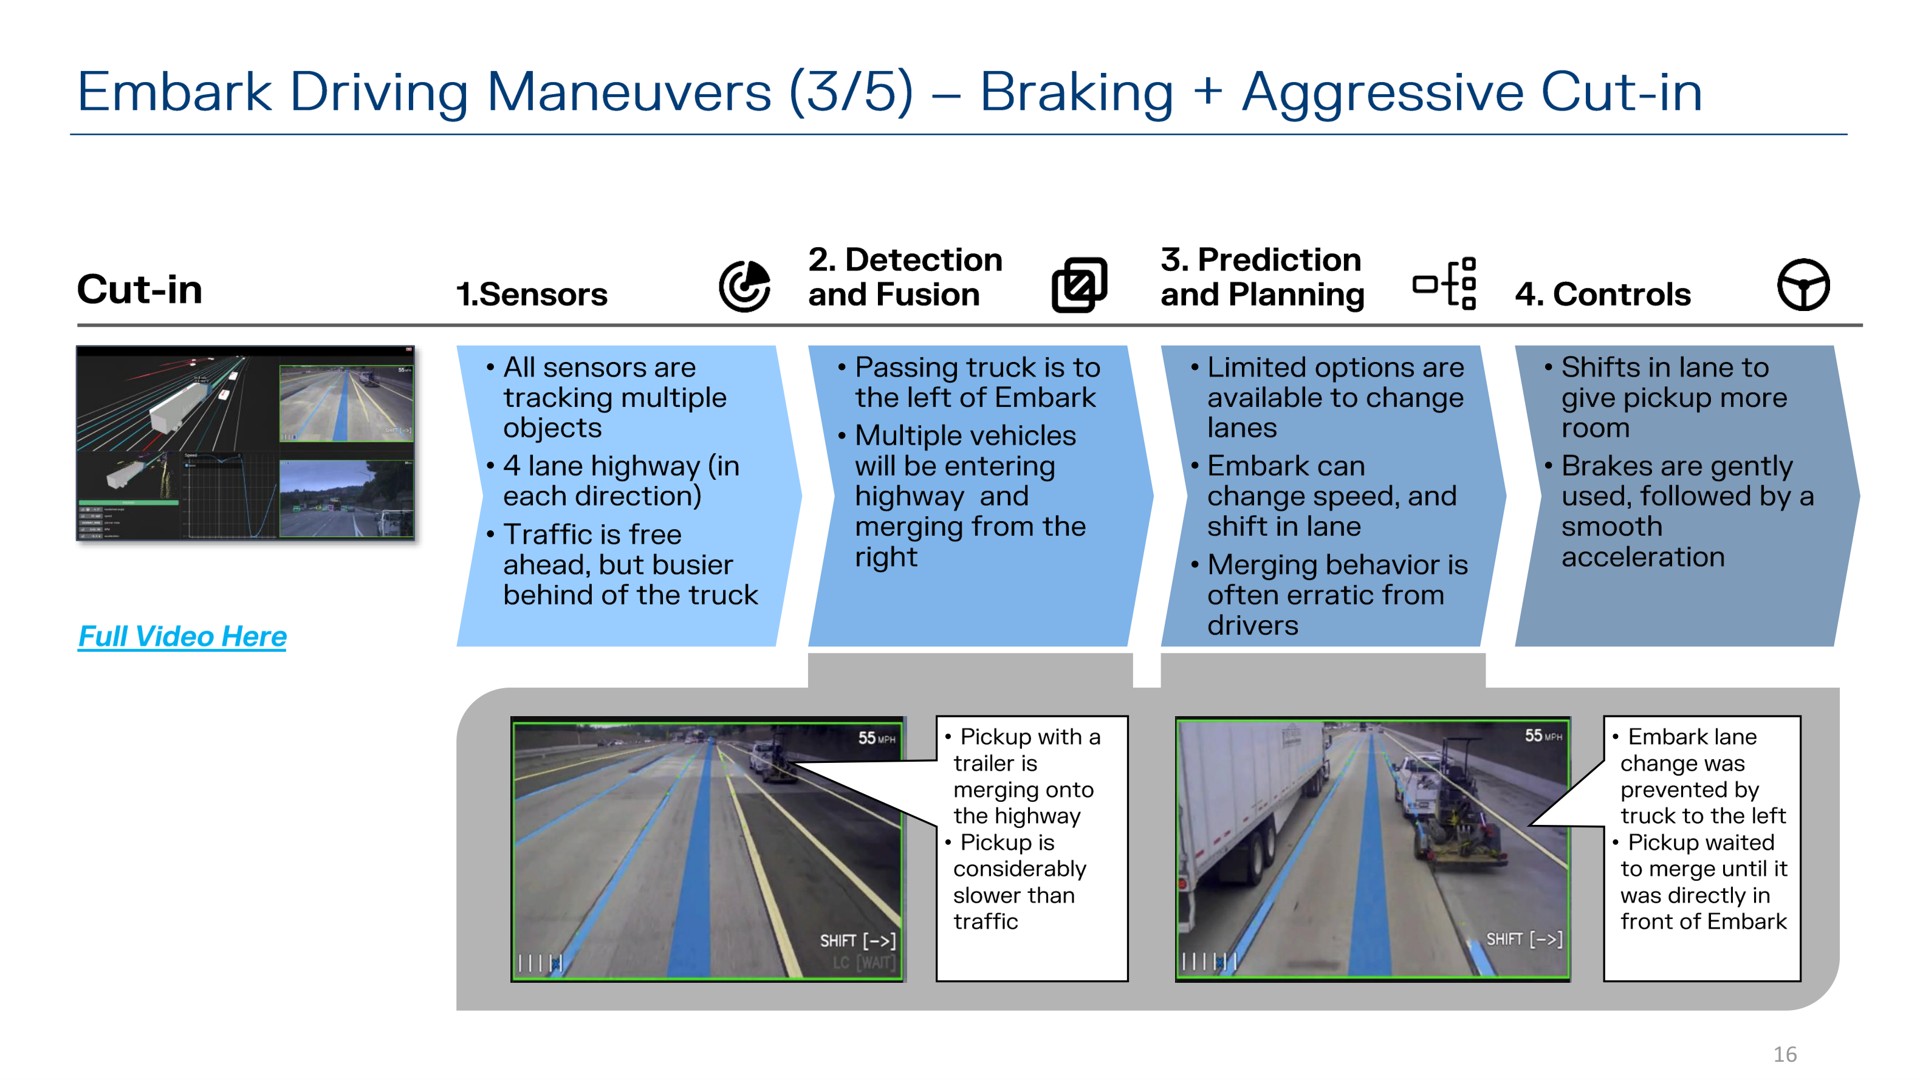 embark driving maneuvers braking aggressive cut in | Embark